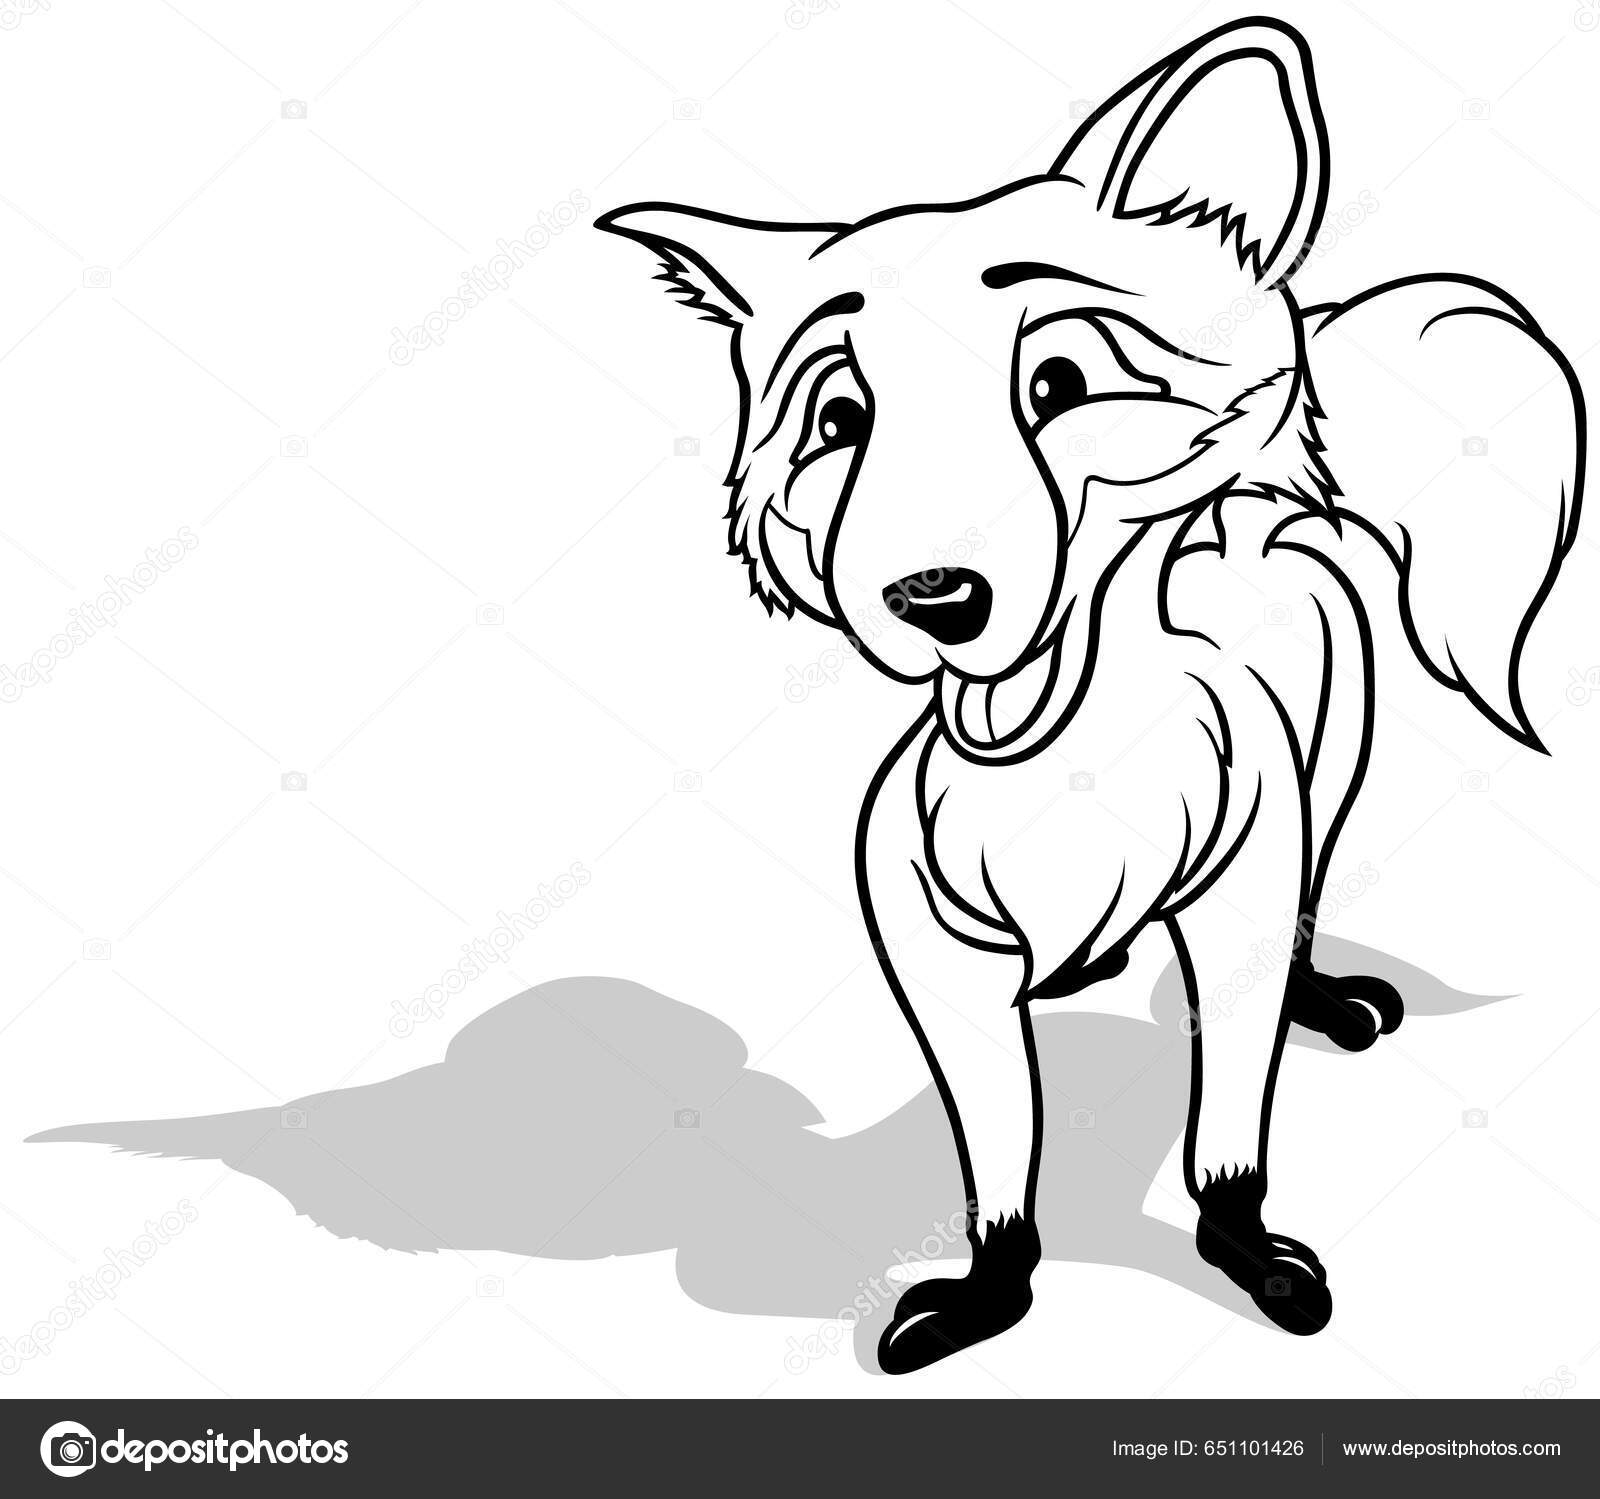 O desenho de uma raposa com uma faixa branca no rosto.